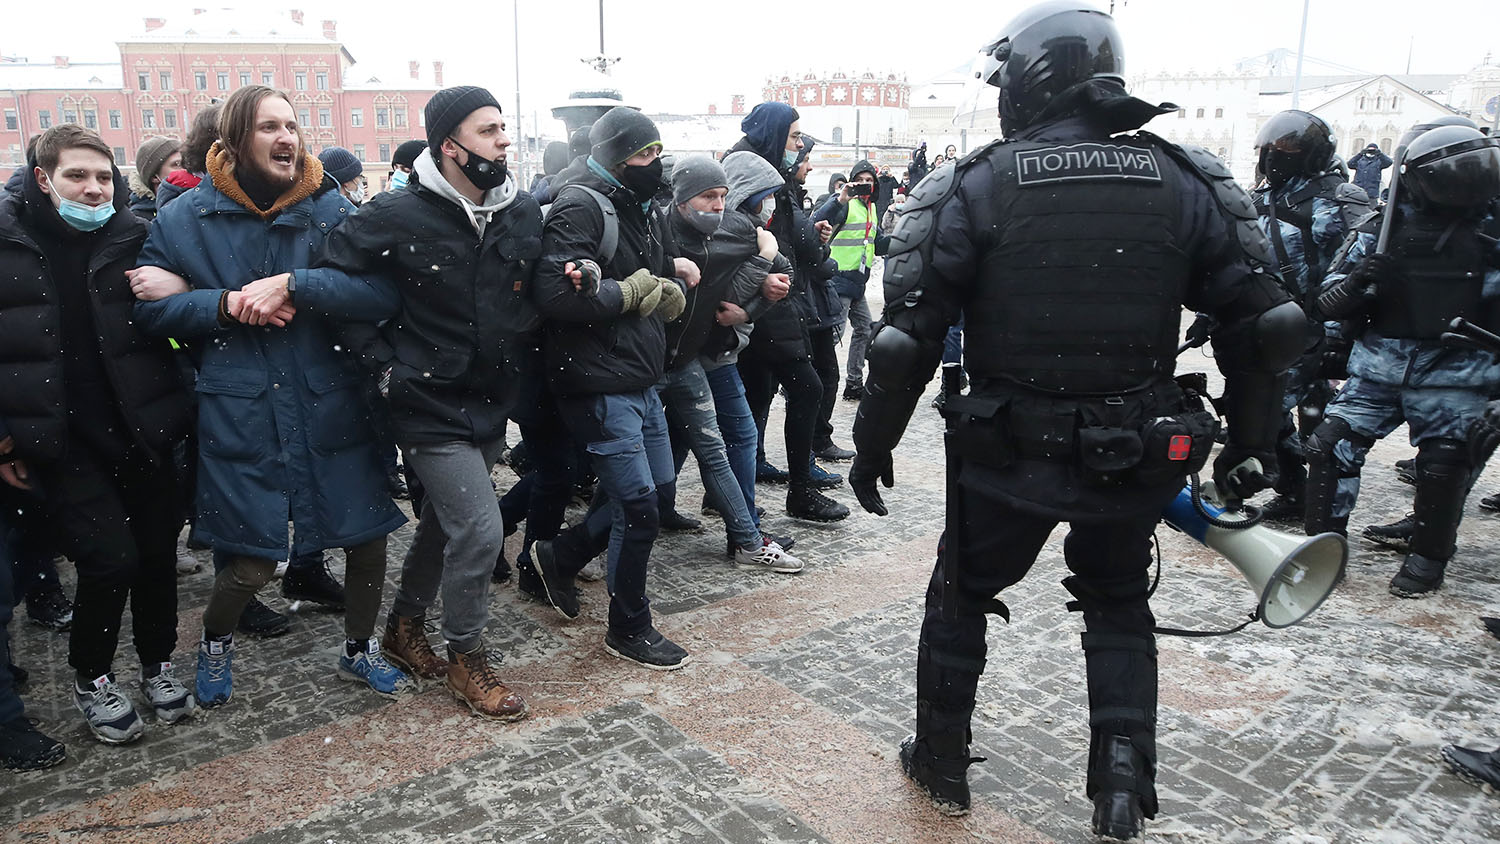 Столкновения с полицией в Москве. Столкновение митингующих с полицией. Дебилы на митинге. Митинг сколько людей вышло